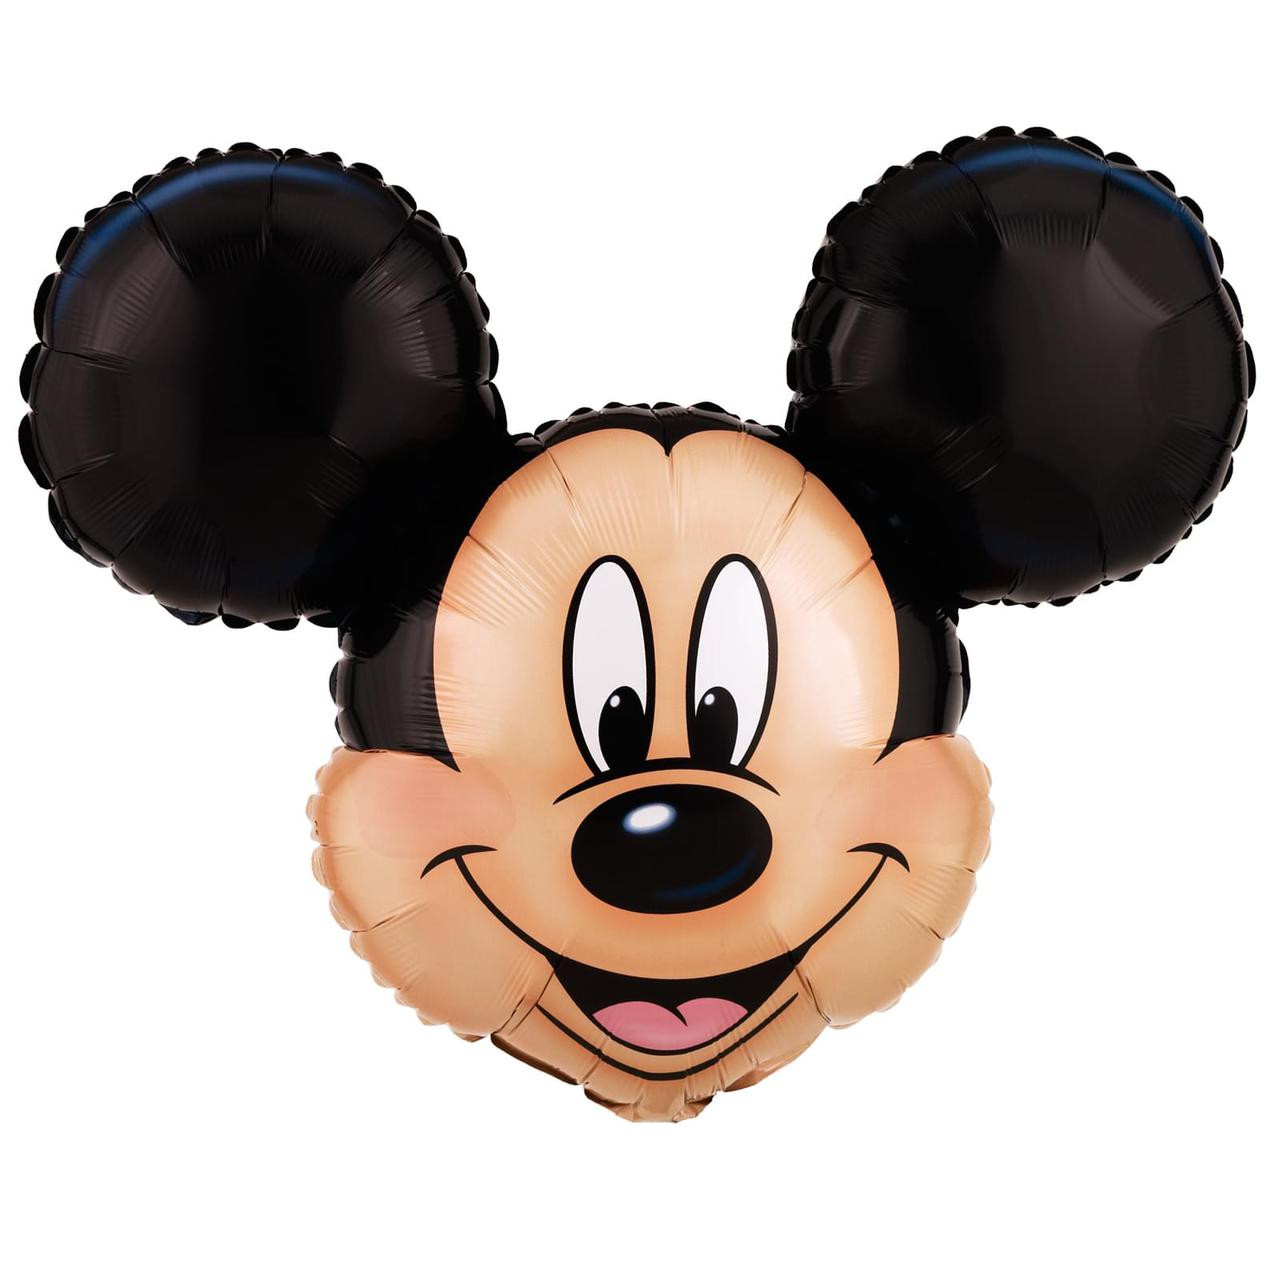 Walt Disney World 10” Sorcerer Mickey Mouse Bobble Head